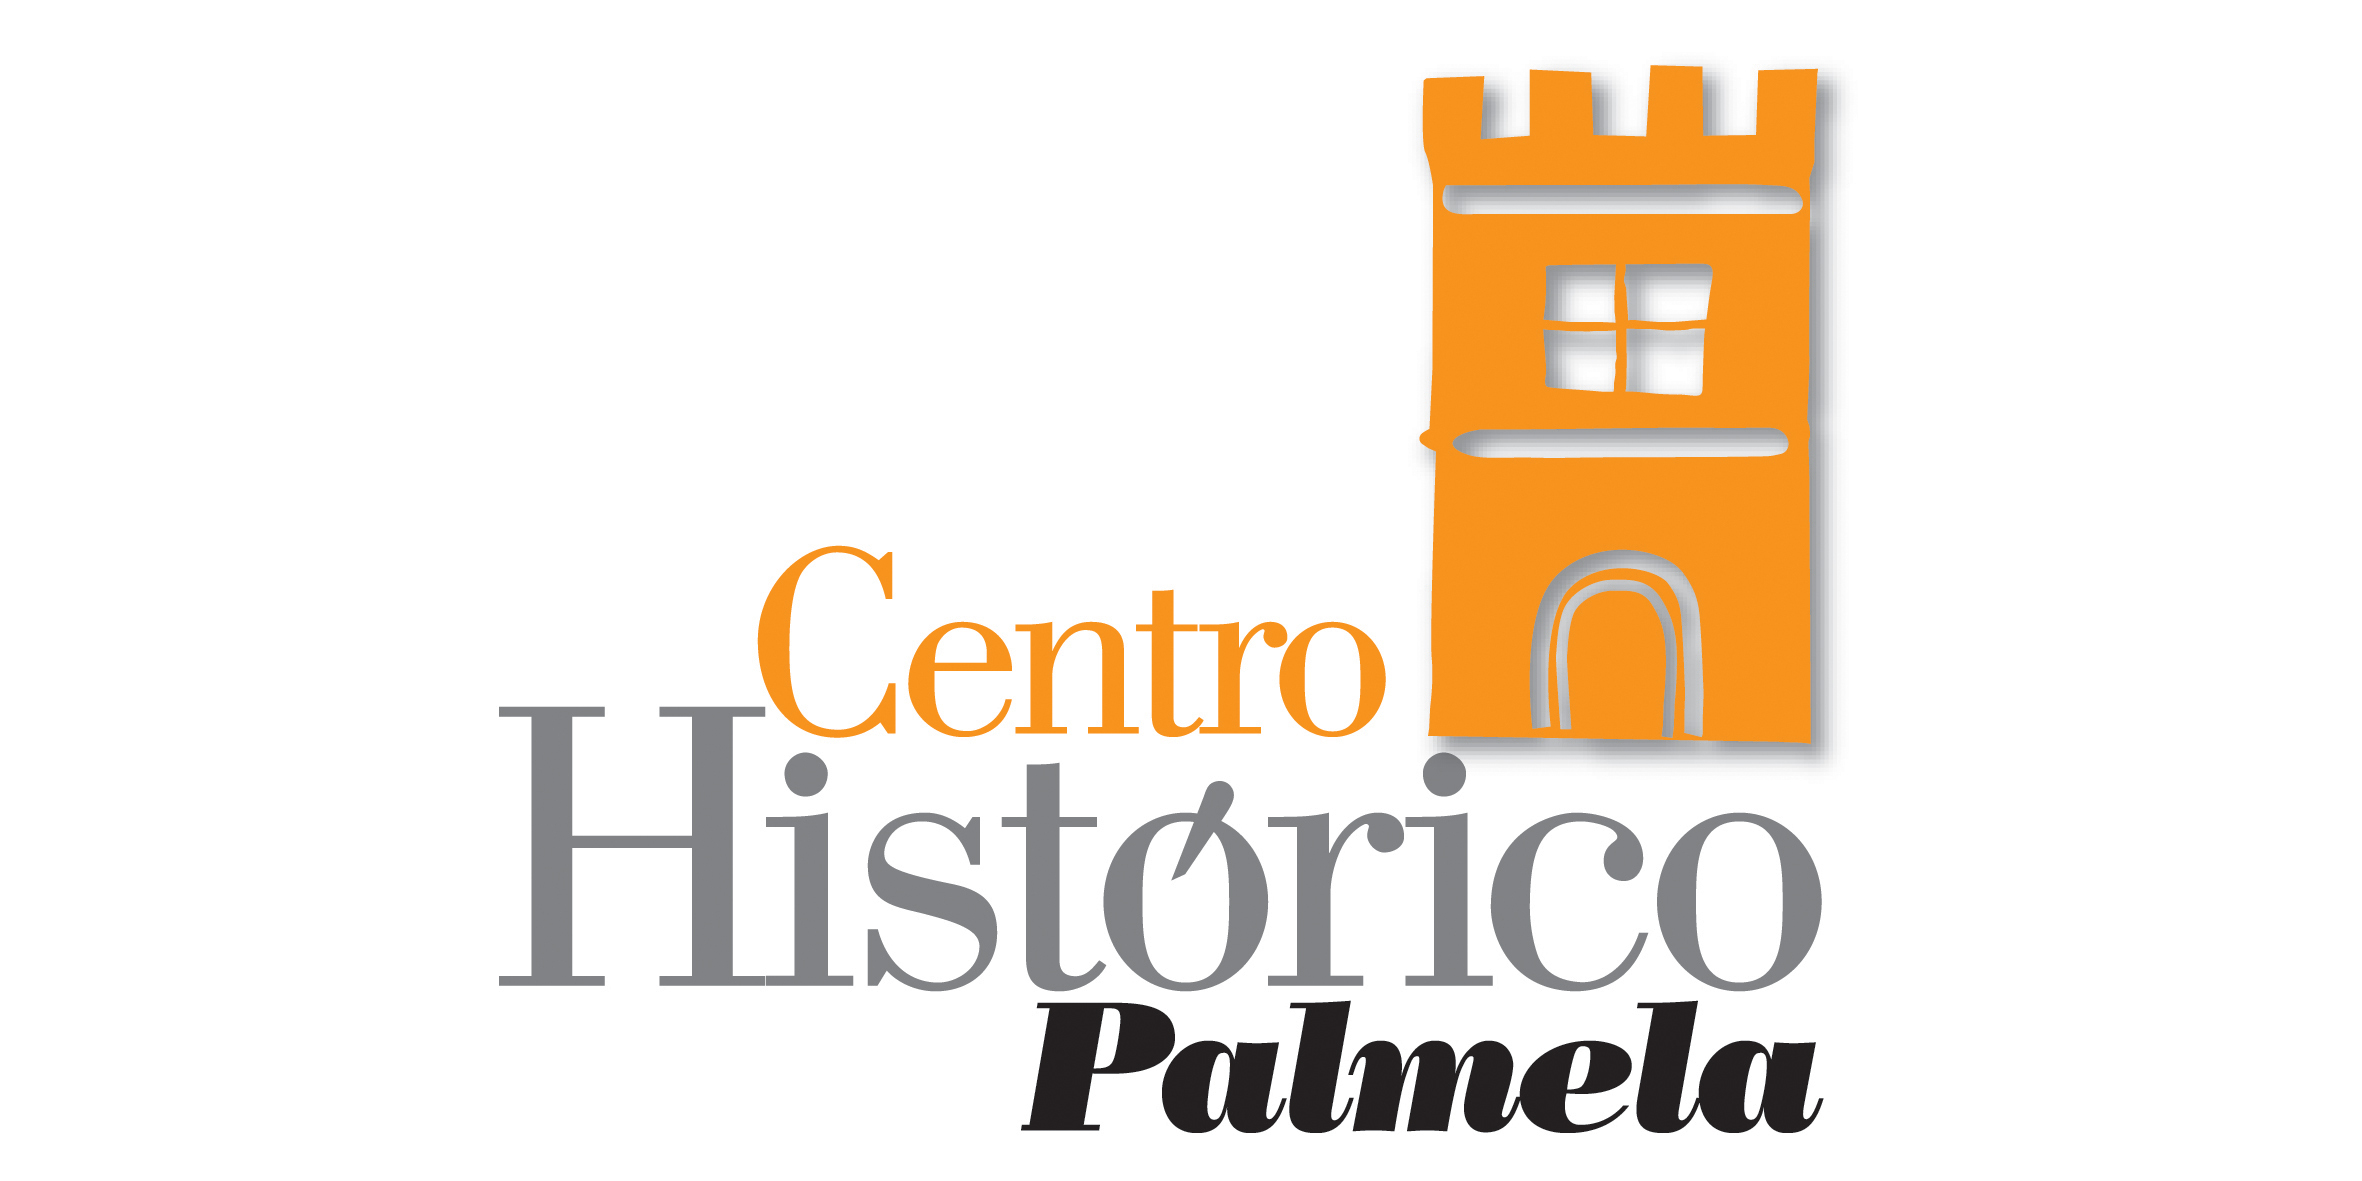 Redução da taxa de IMI: Município incentiva conservação de imóveis no Centro Histórico de Palmela